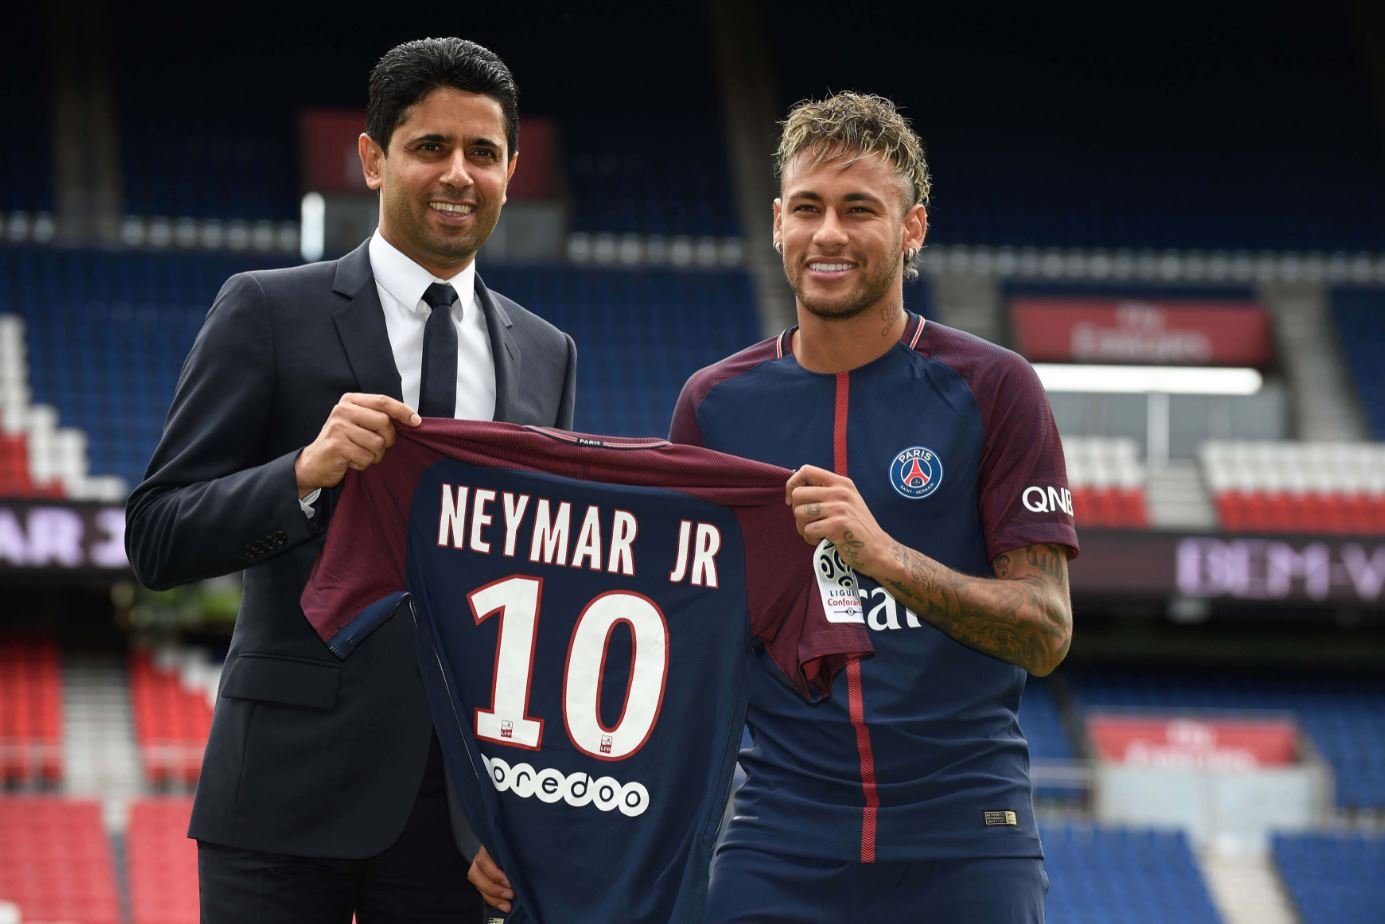 specificatie Tether Portaal Hoe de transfer van Neymar de volgende stap betekende voor de islamisering  - Business AM